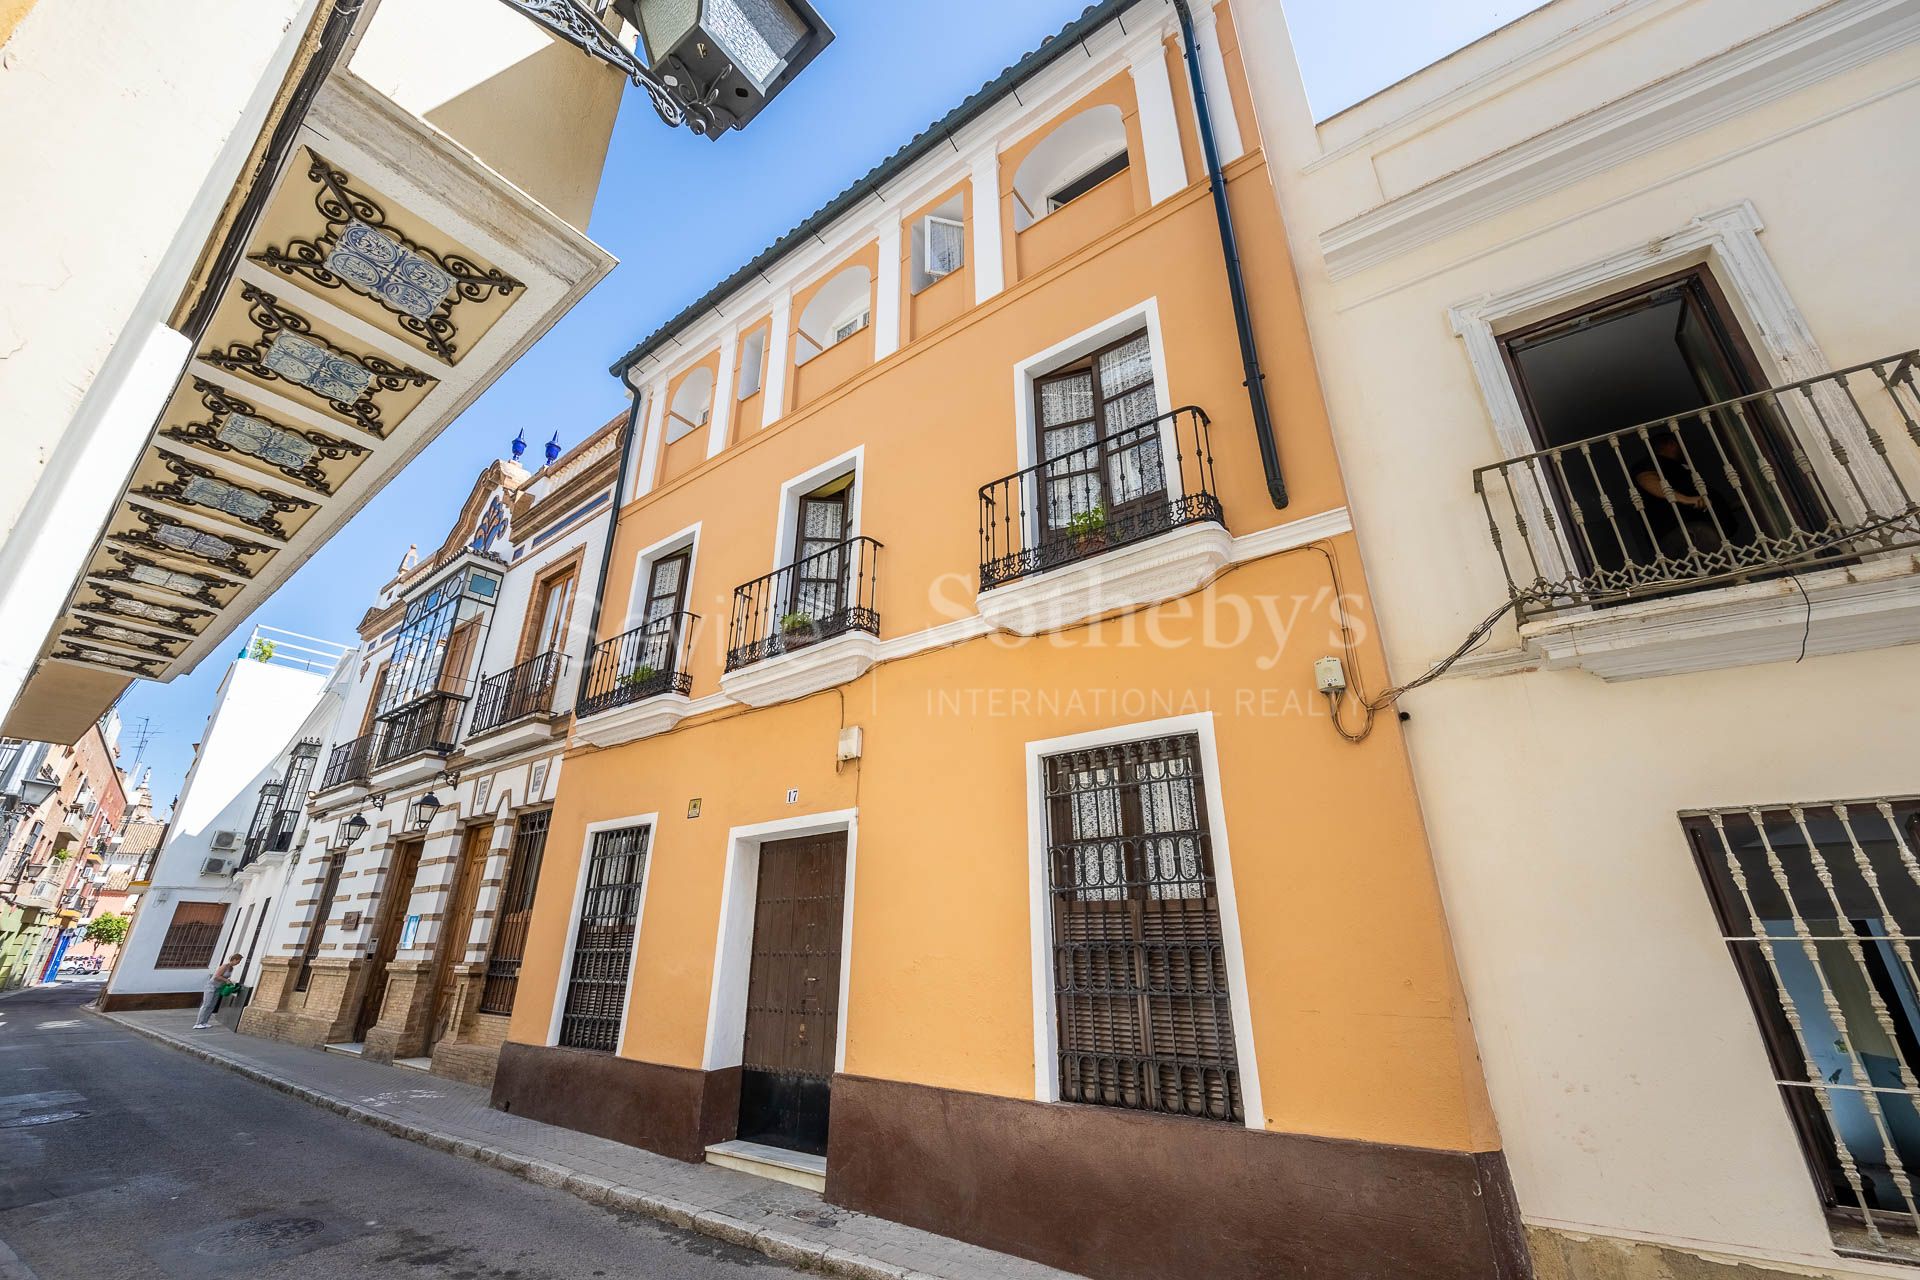 Propiedad adosada de estilo regionalista de 3 plantas en la zona centro de Sevilla